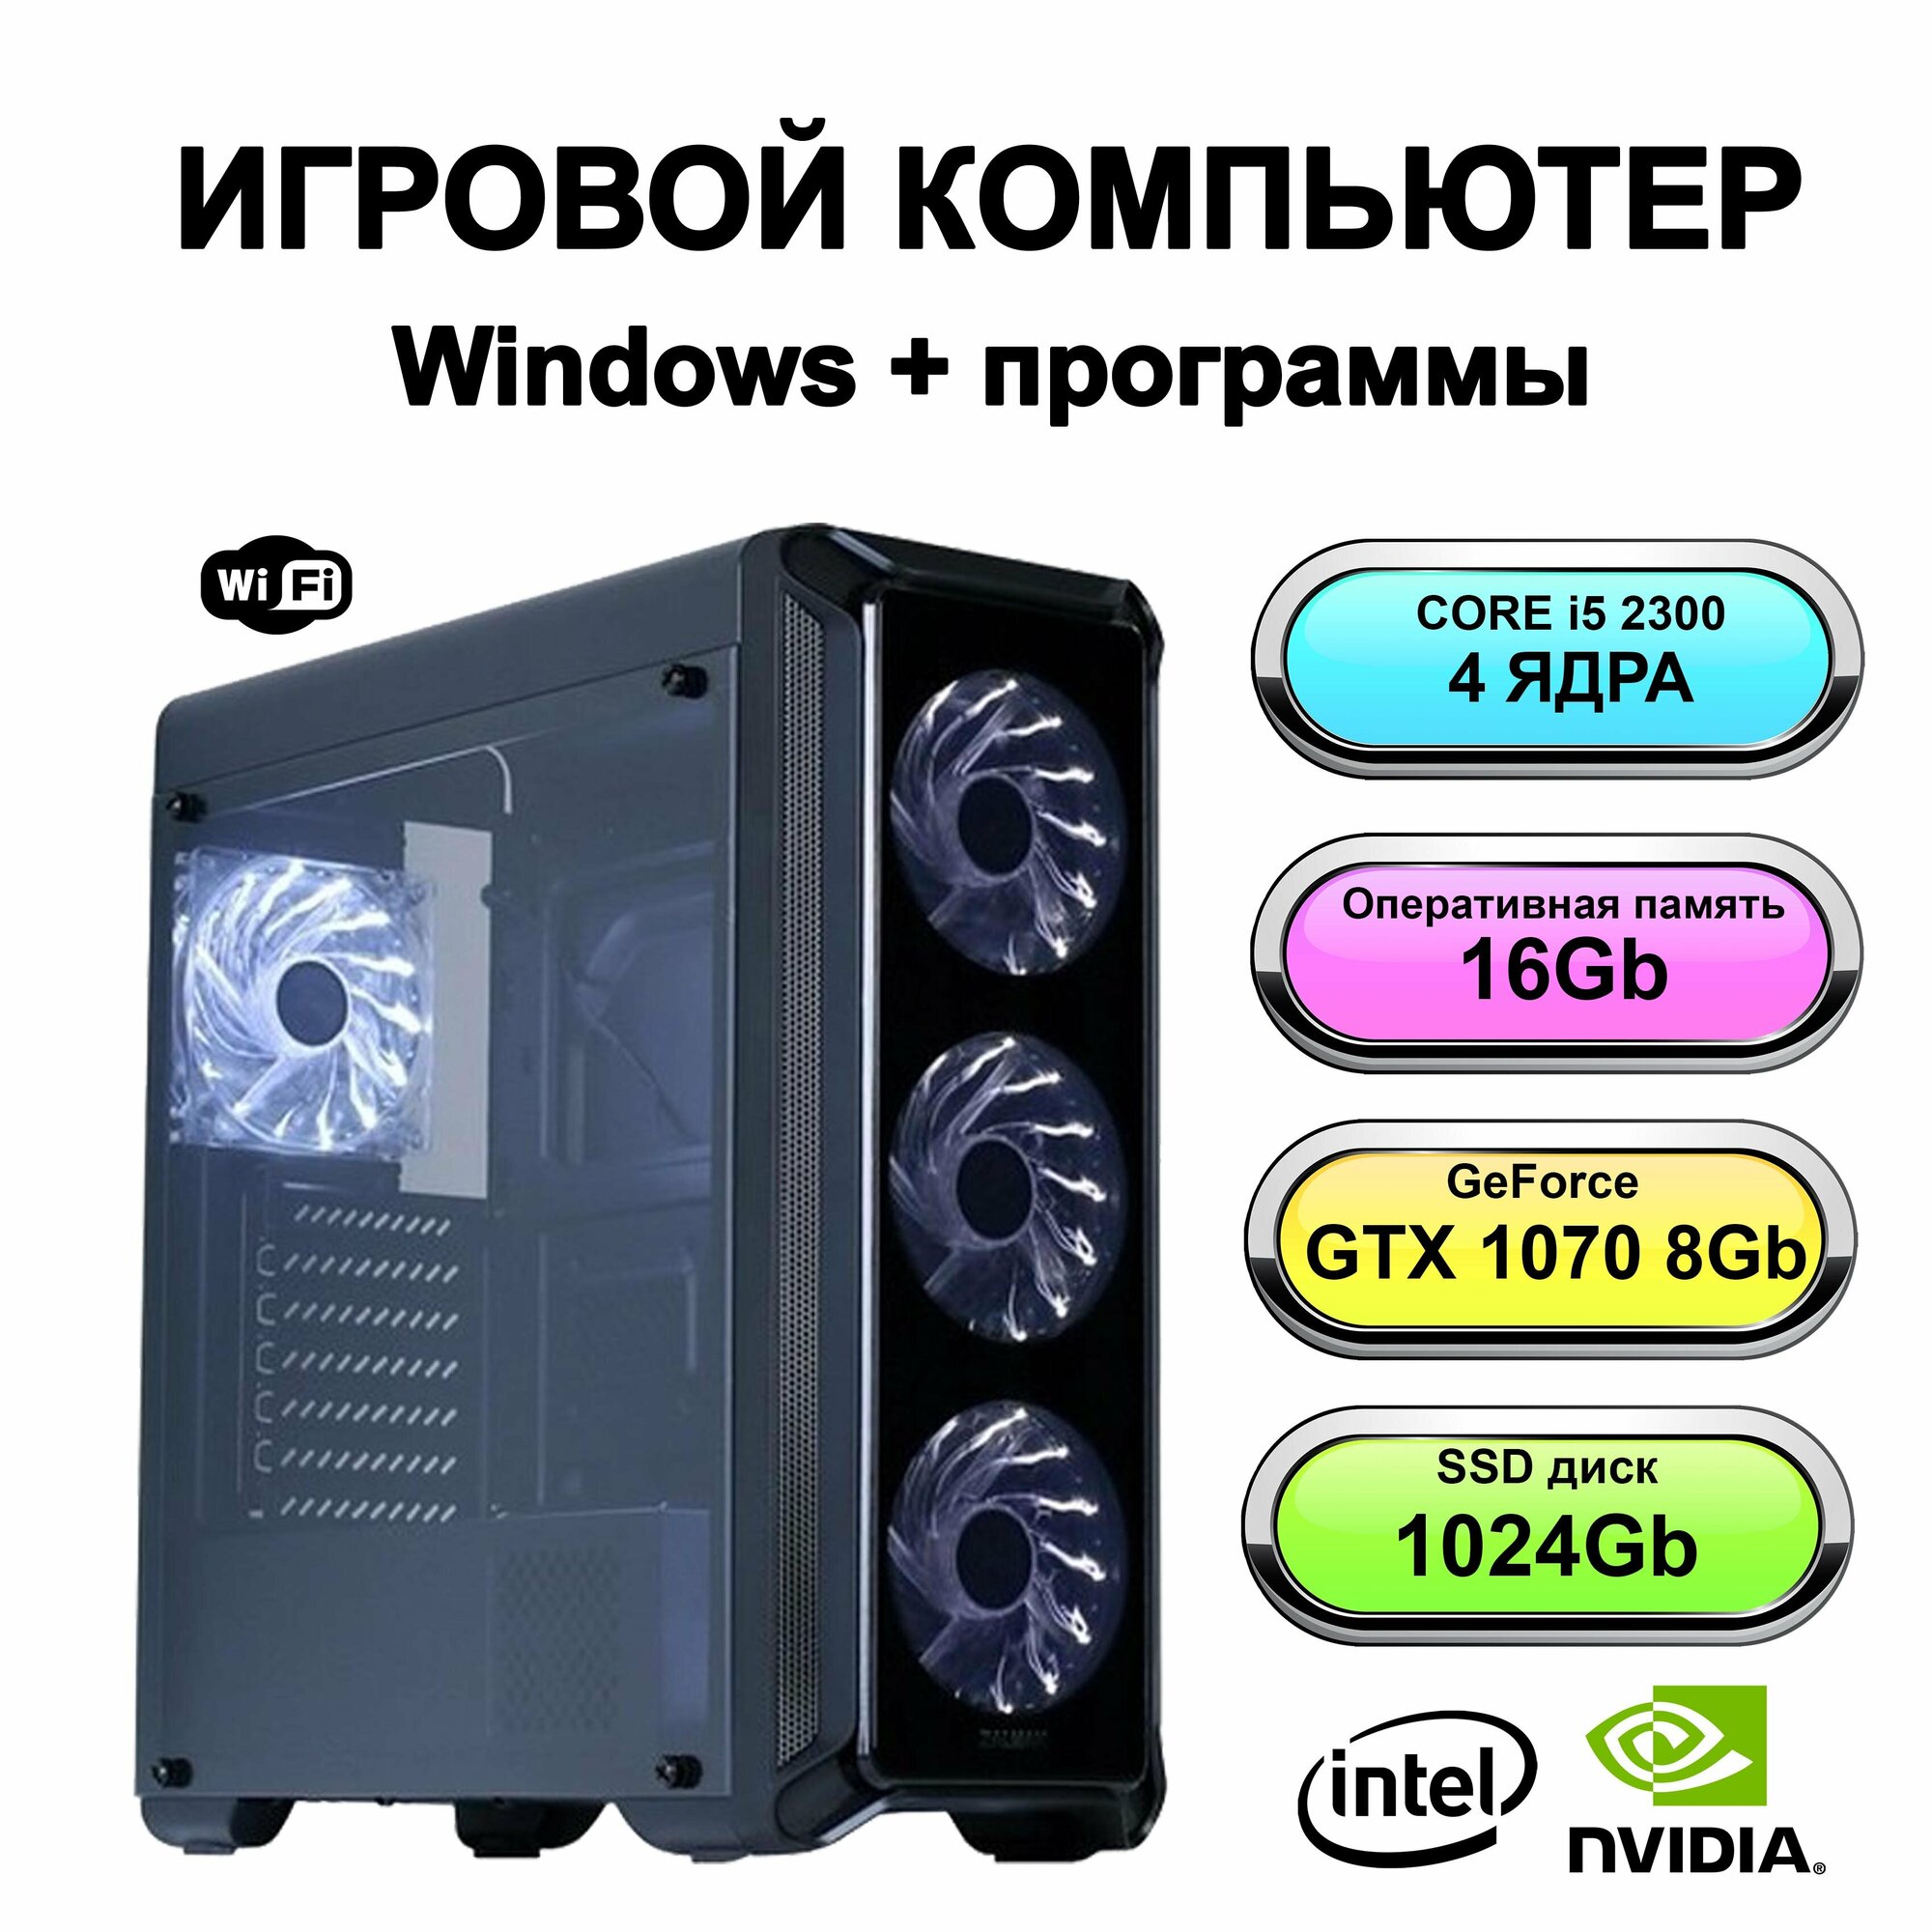 Игровой системный блок Power PC мощный компьютер (Intel Core i5-2300 (2.8 ГГц), RAM 16 ГБ, SSD 1024 ГБ, Geforce GTX 1070 (8 Гб), Windows 10 Pro